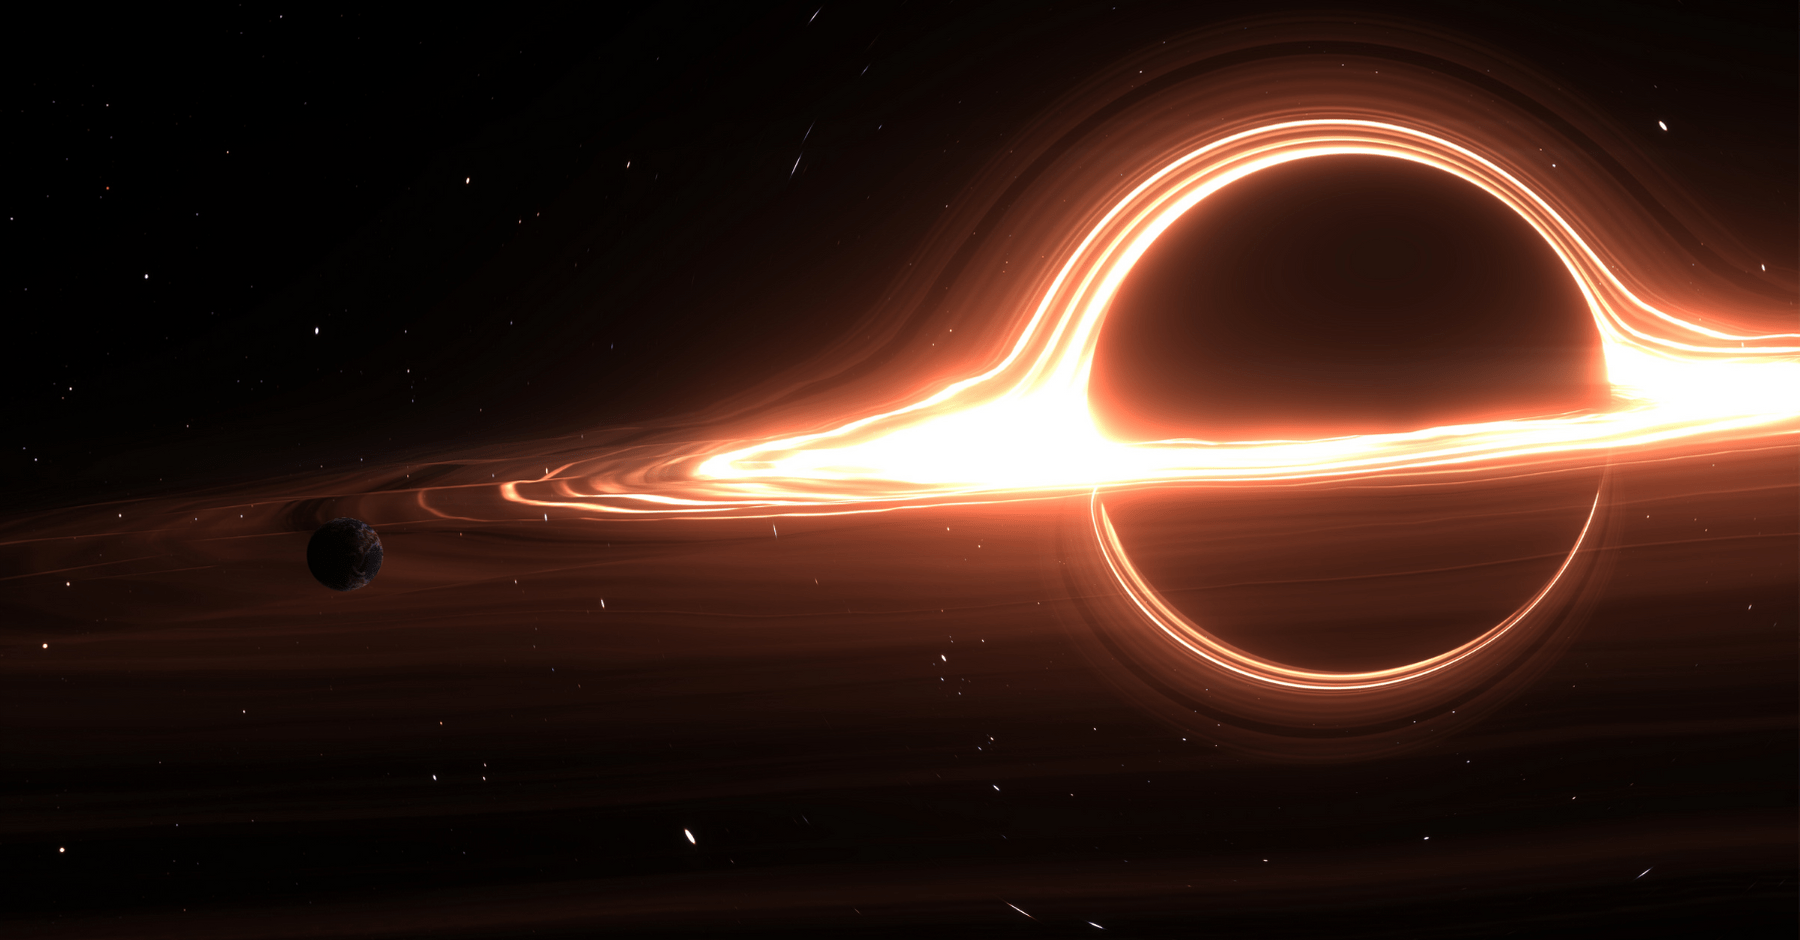 čierna diera